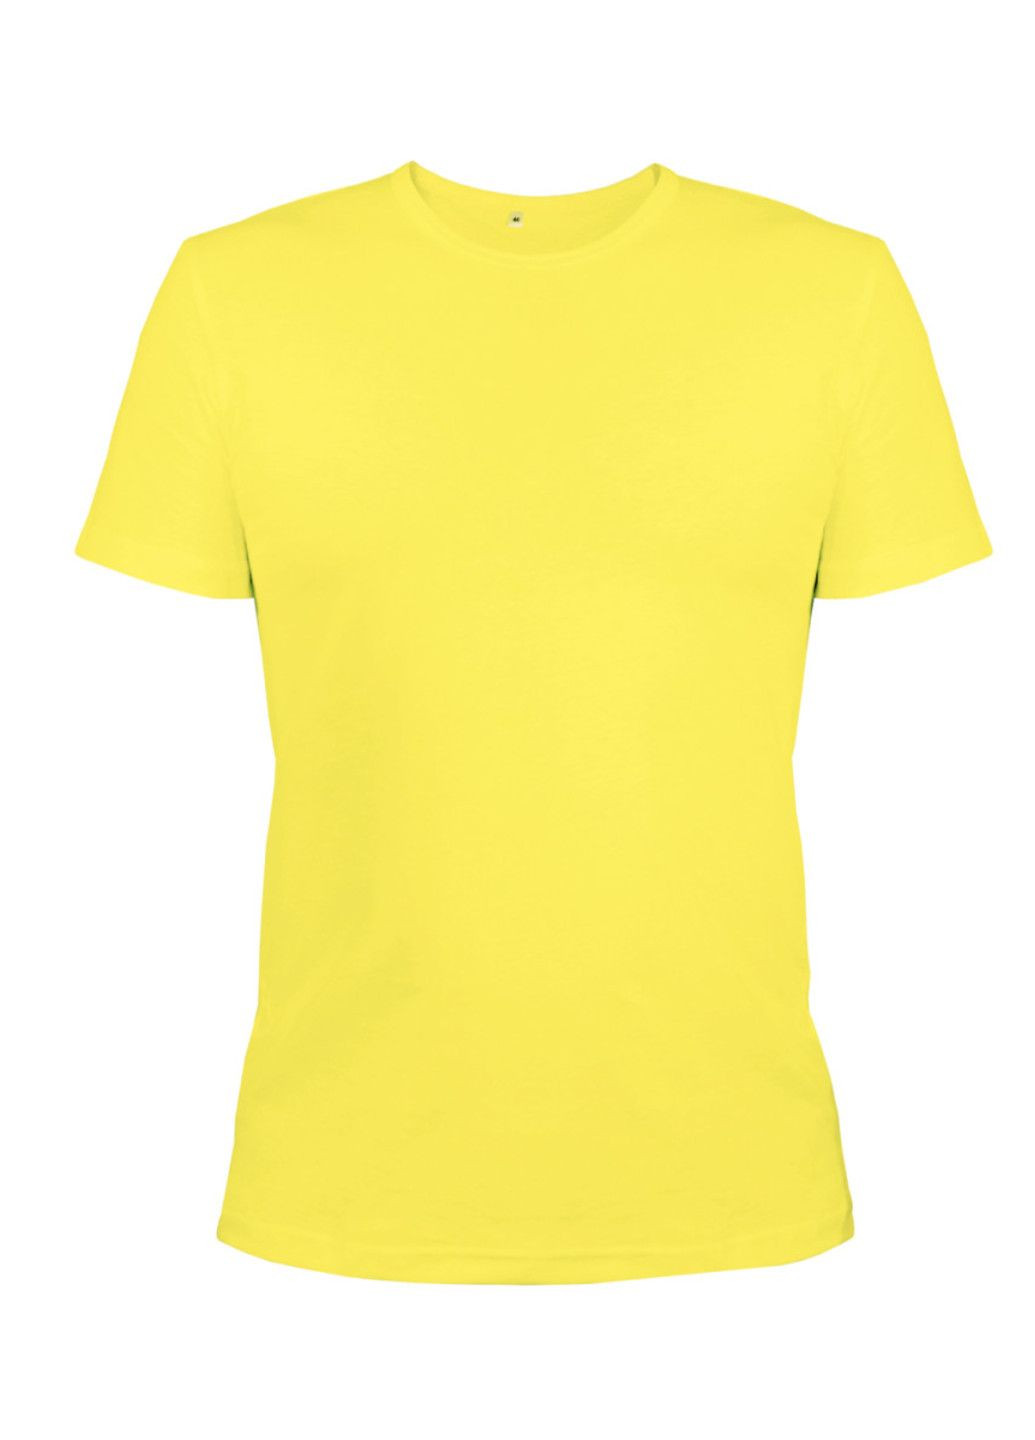 Жовта футболка чоловіча м.45 з коротким рукавом Ярослав